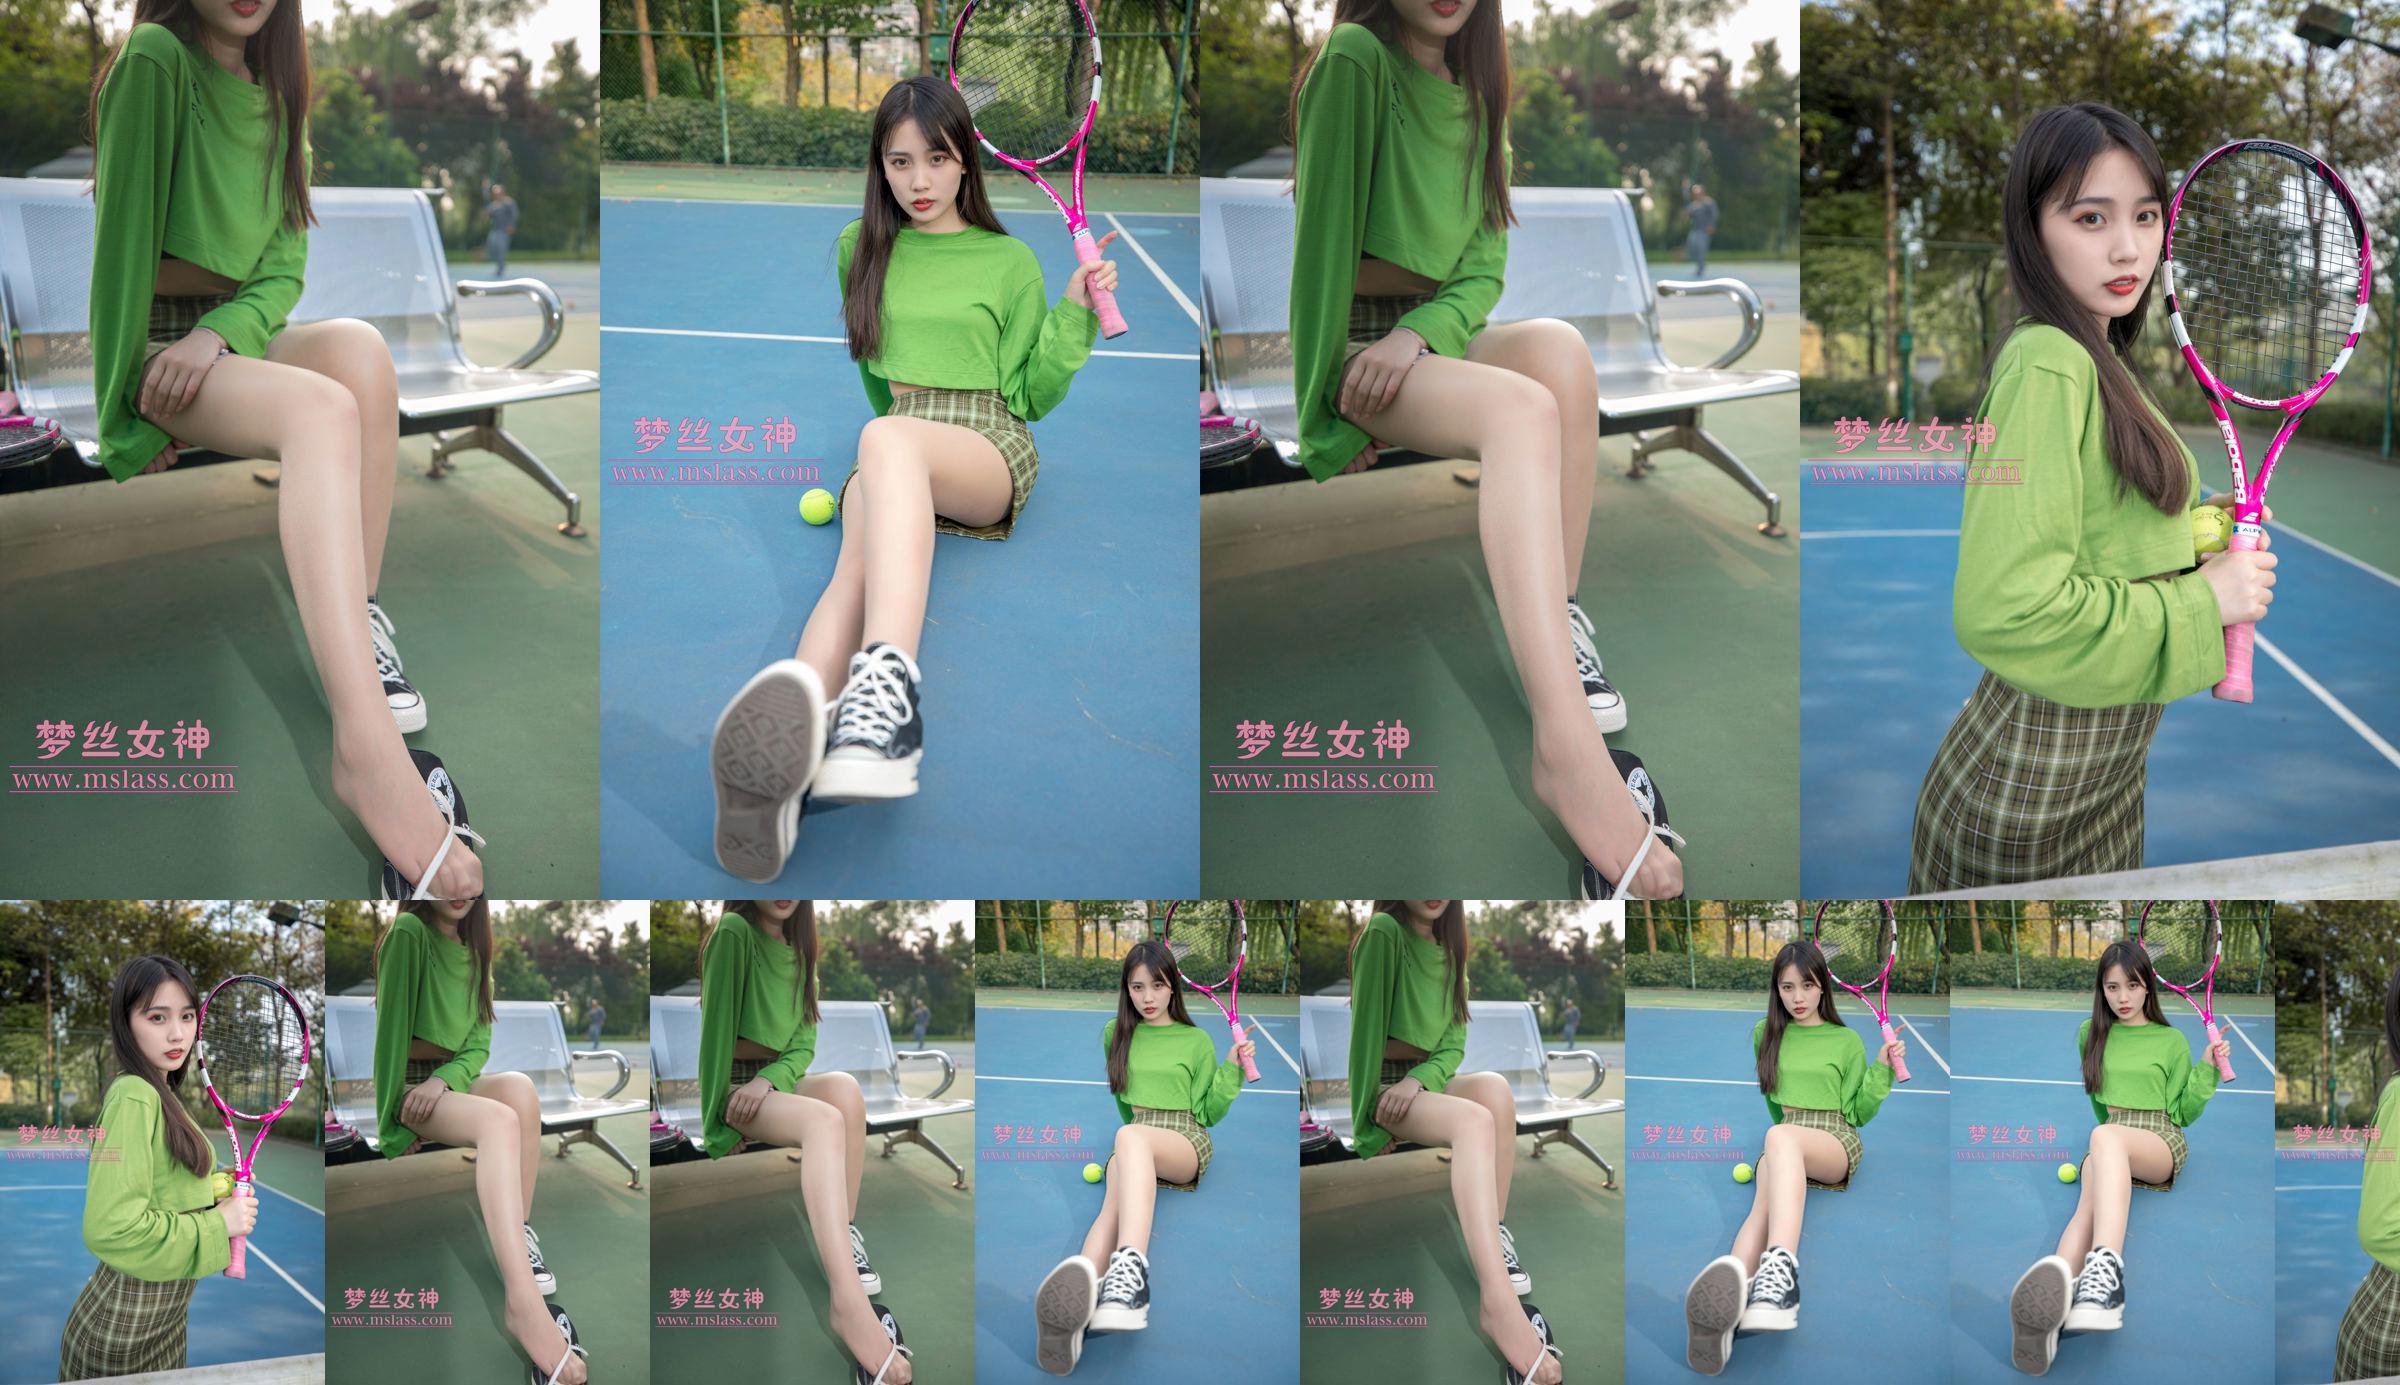 [เทพธิดาแห่งความฝัน MSLASS] Xiang Xuan Tennis Girl No.9c29a5 หน้า 1